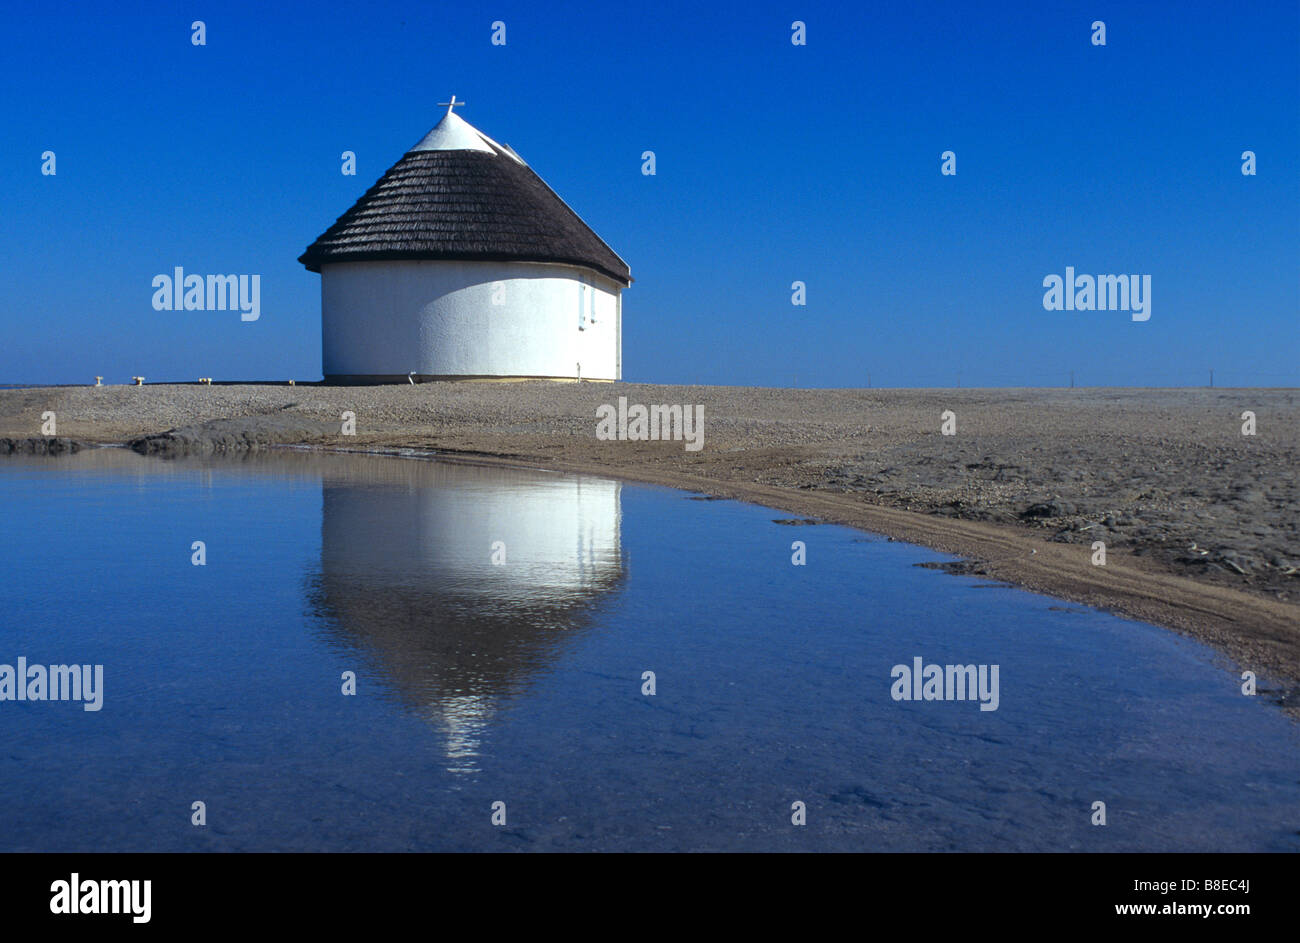 Traditionellen strohgedeckten Guardian Haus spiegelt sich im See, Camargue, Provence, Frankreich Stockfoto